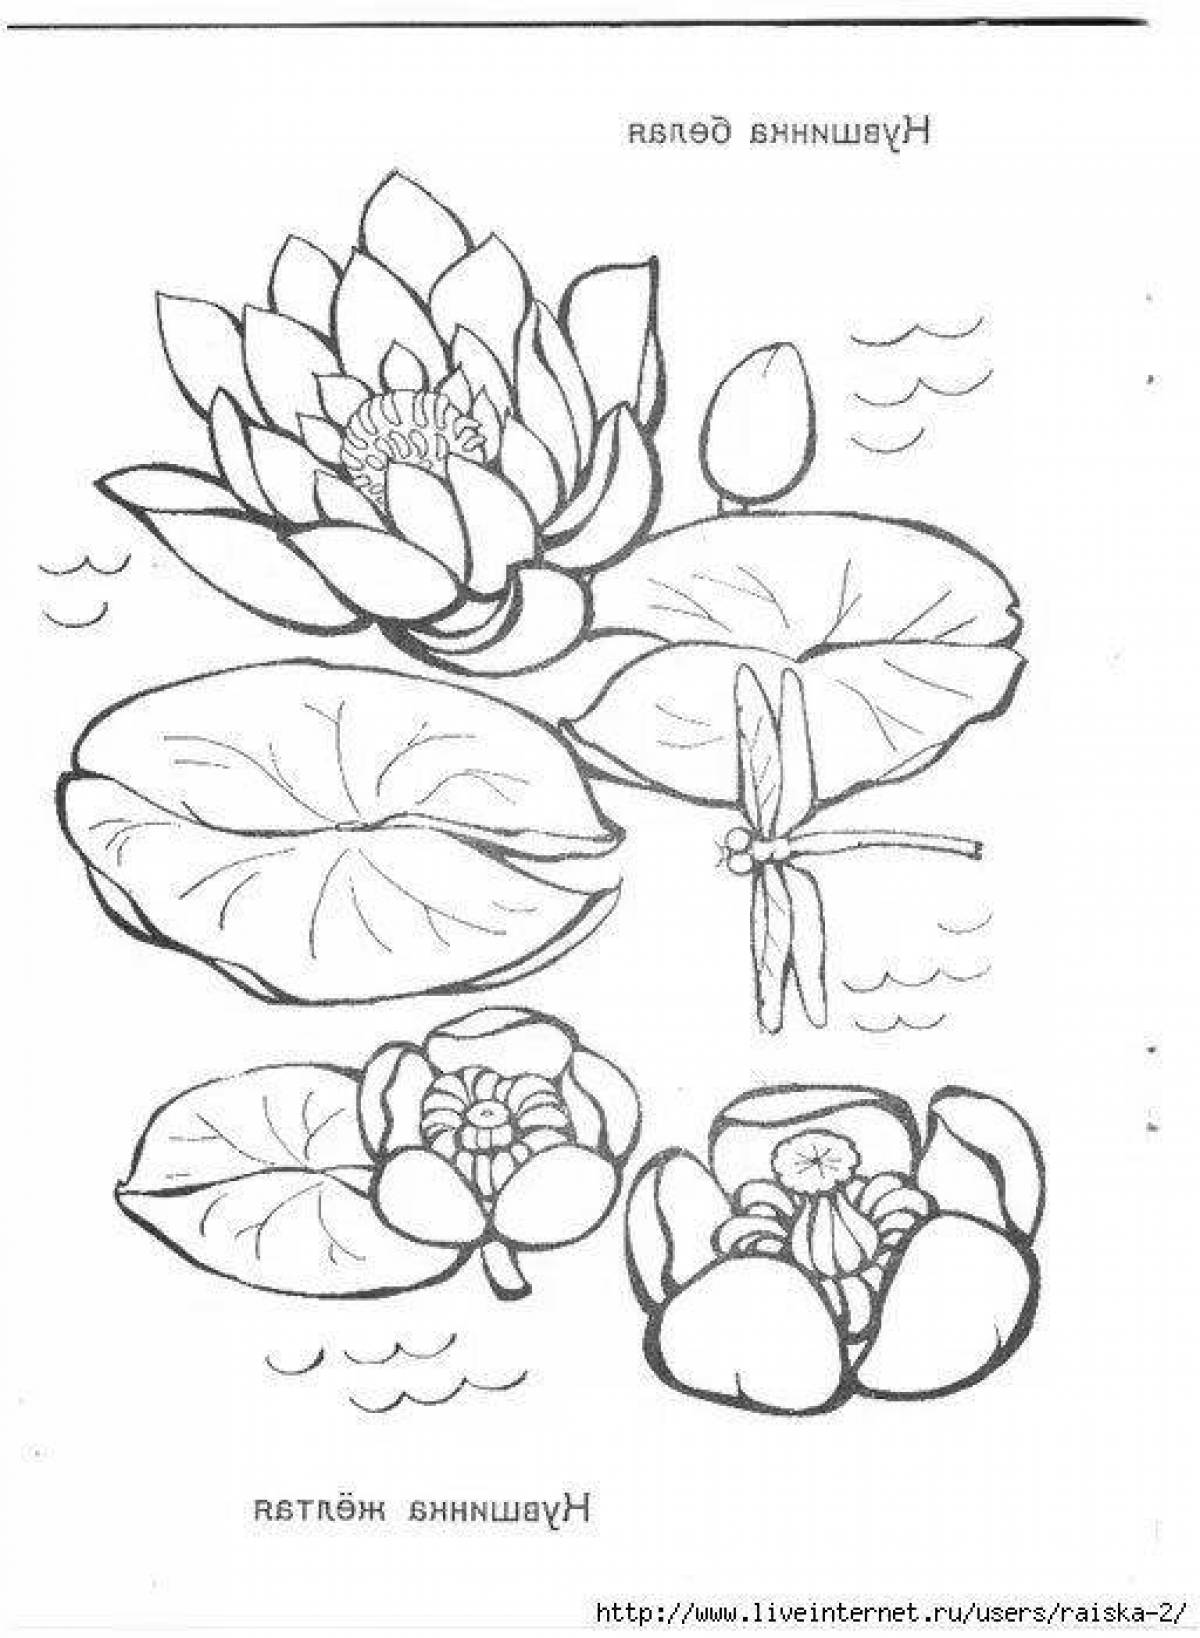 Детские рисунки растений из красной книги